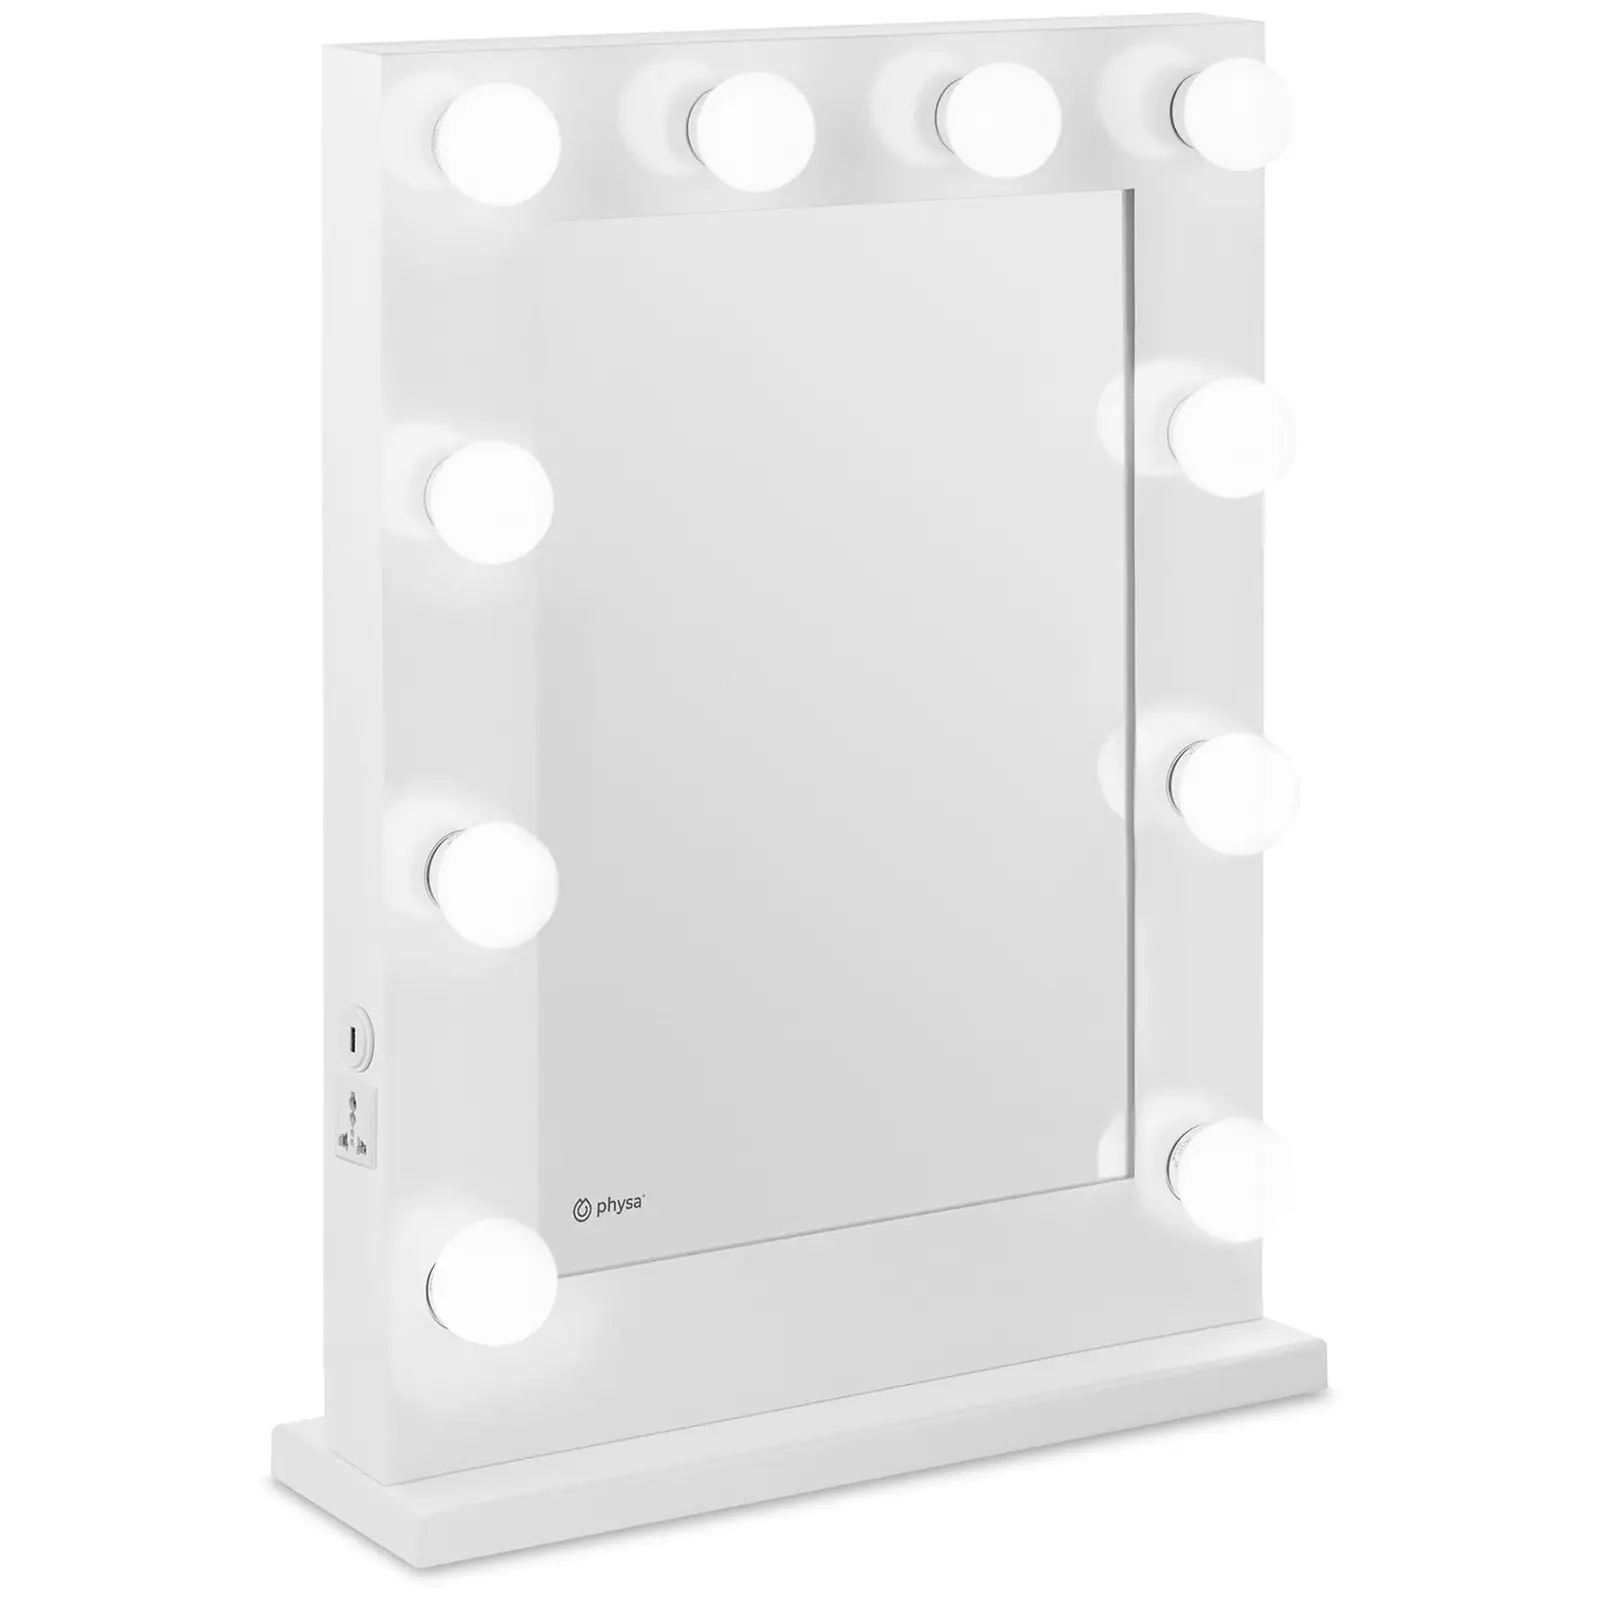 LED Vanity Mirror - white - 10 LEDs - square